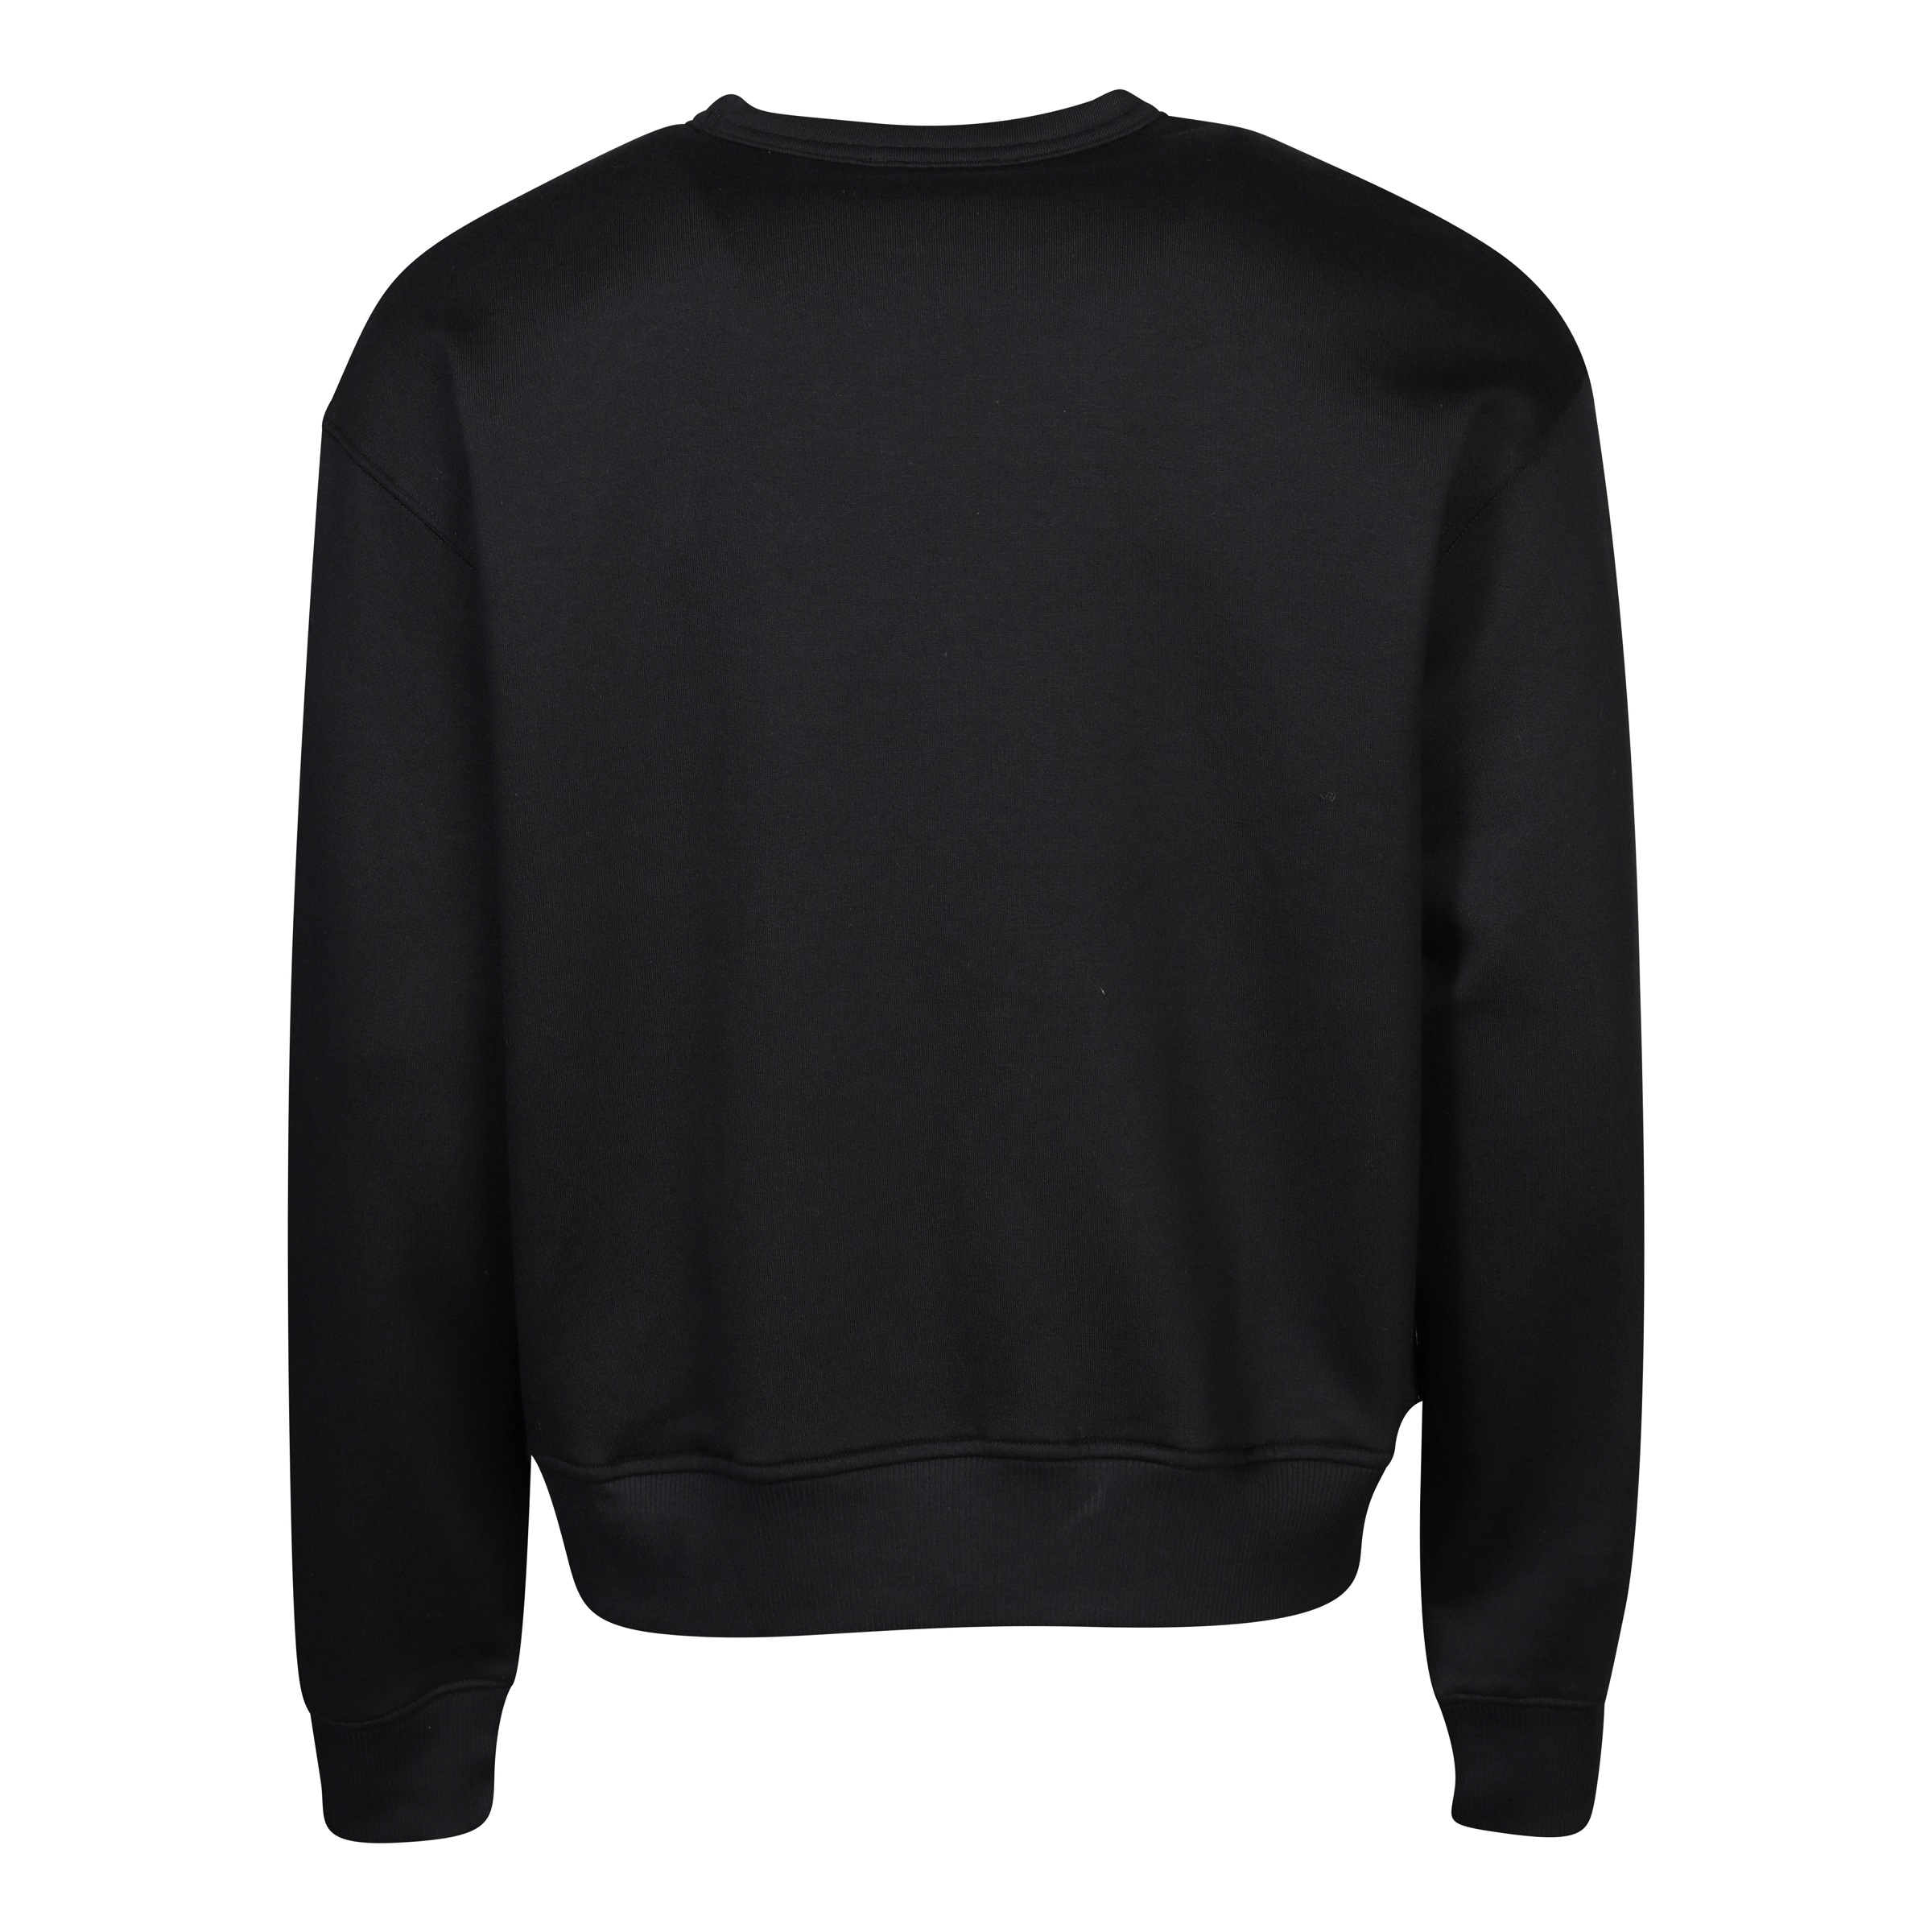 032c Classic Crewneck Sweater in Black